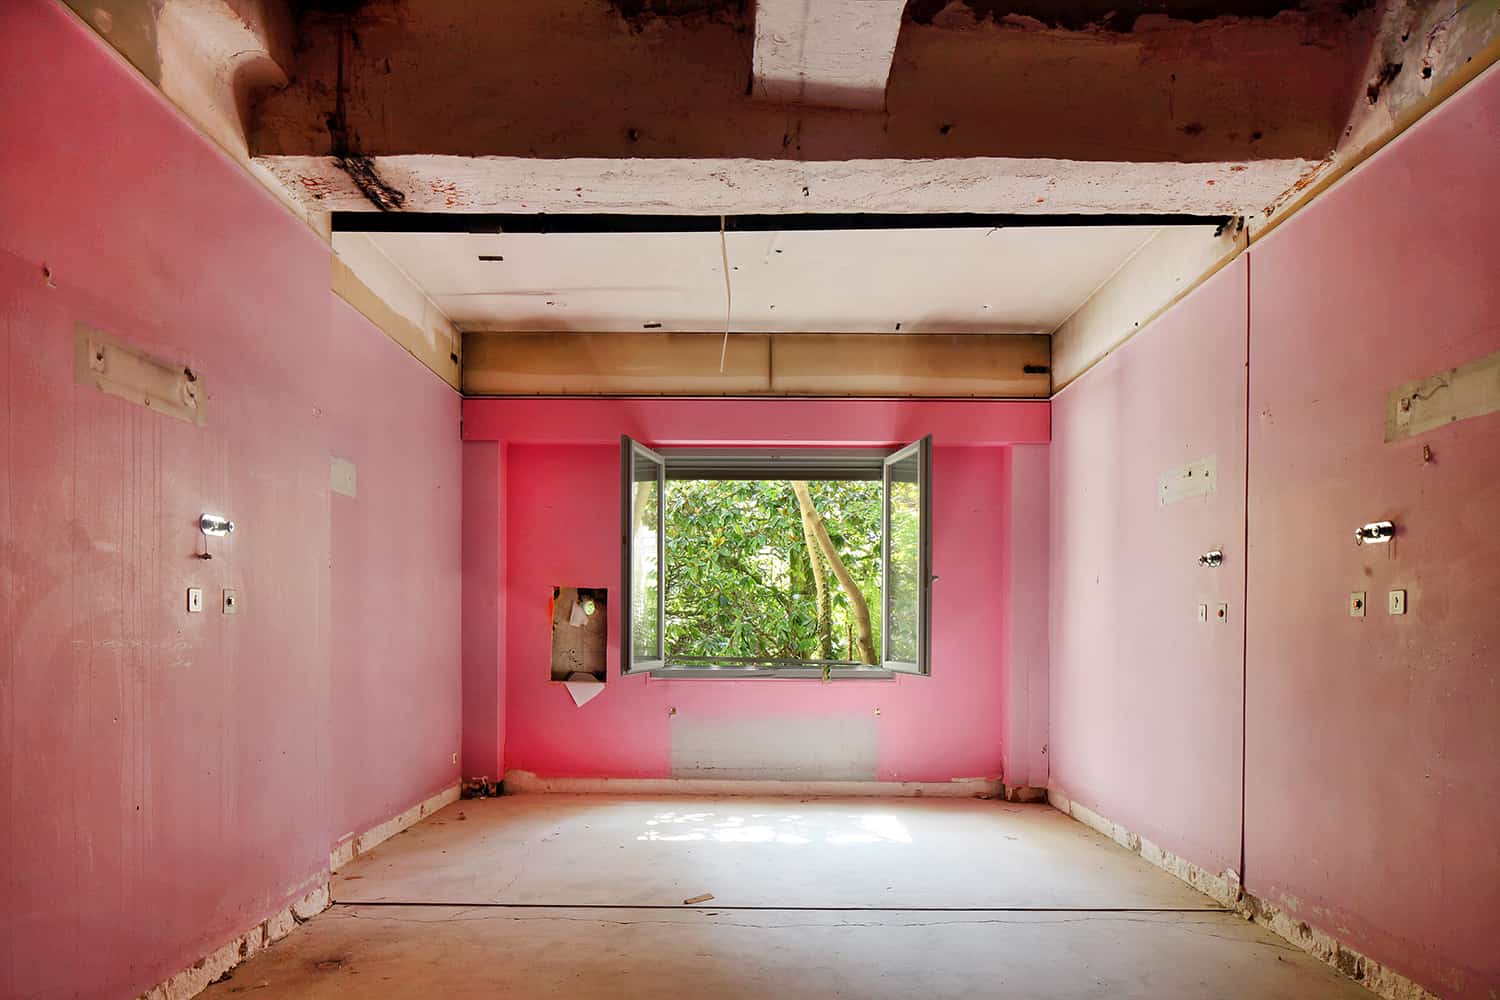 photographie d'architecture d'une pièce peinte en rose laissée à l'abandon © francois nussbaumer